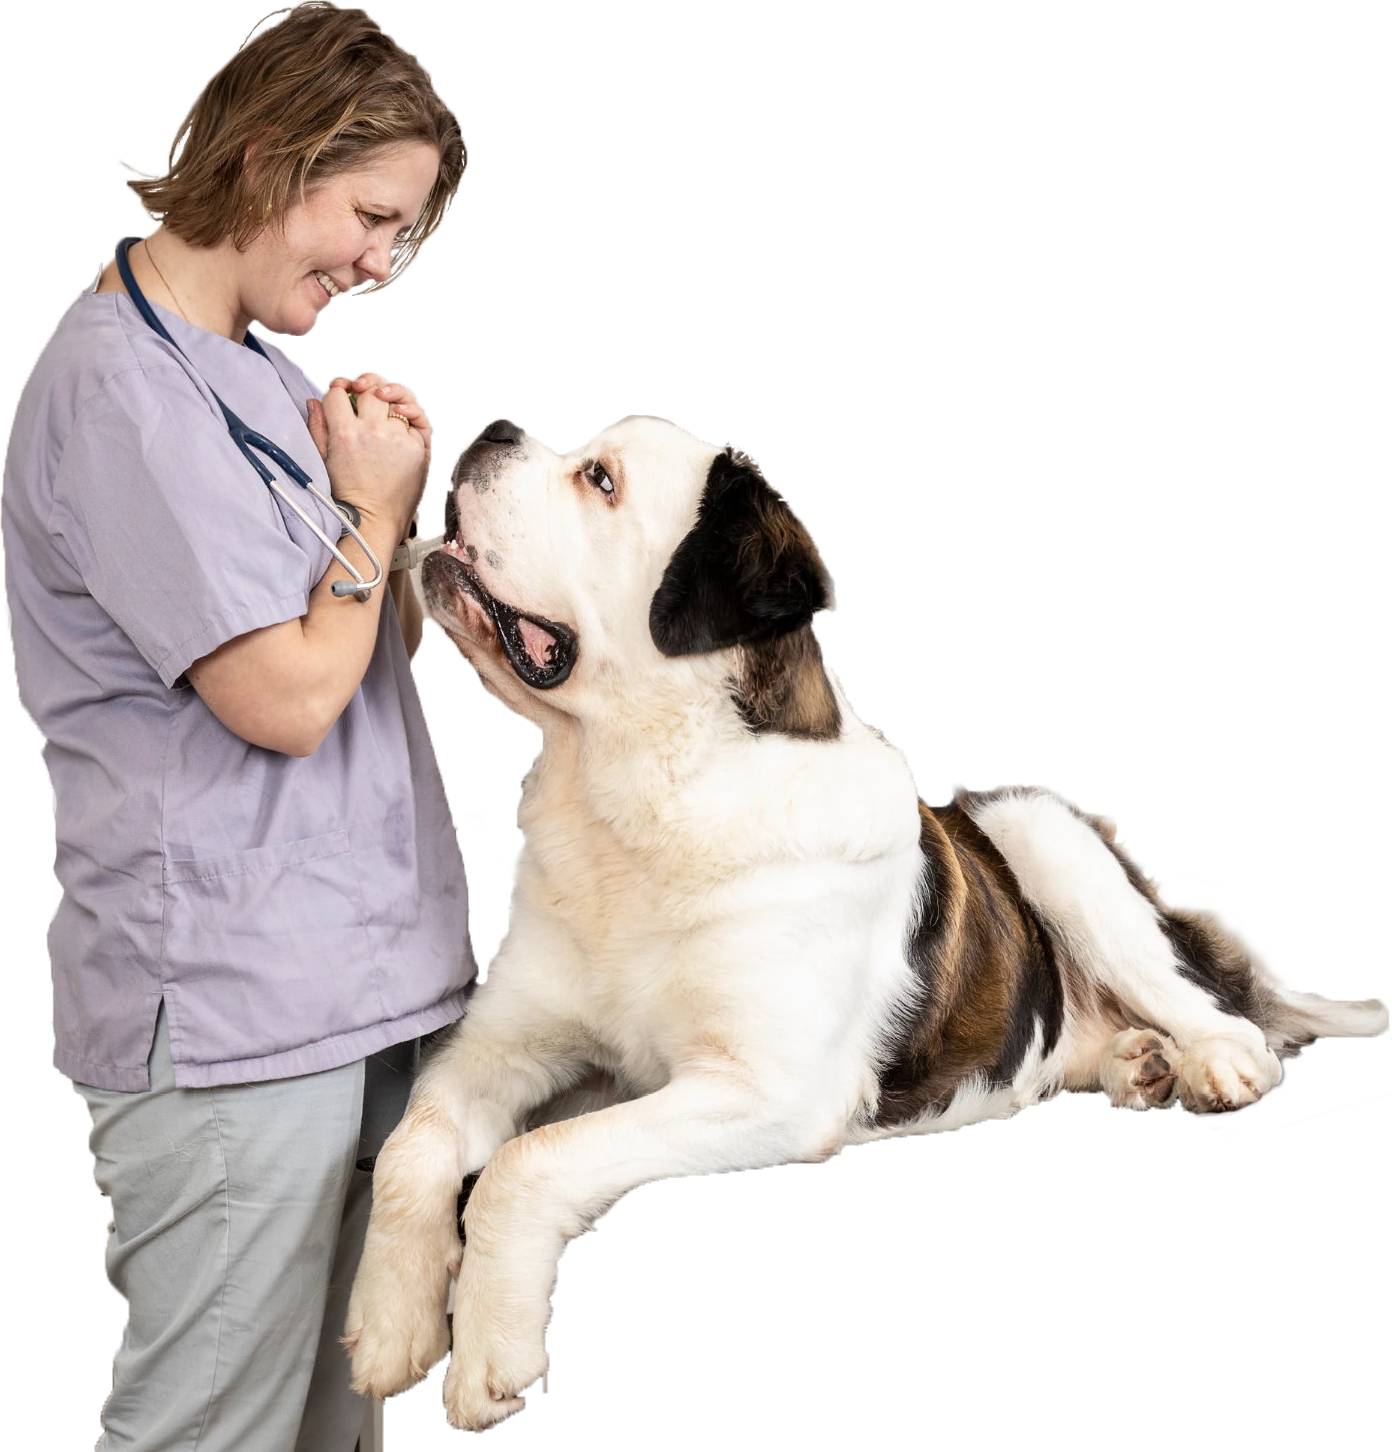 Dyrlegen sammen med en hund i behandlingsrommet på klinikken.